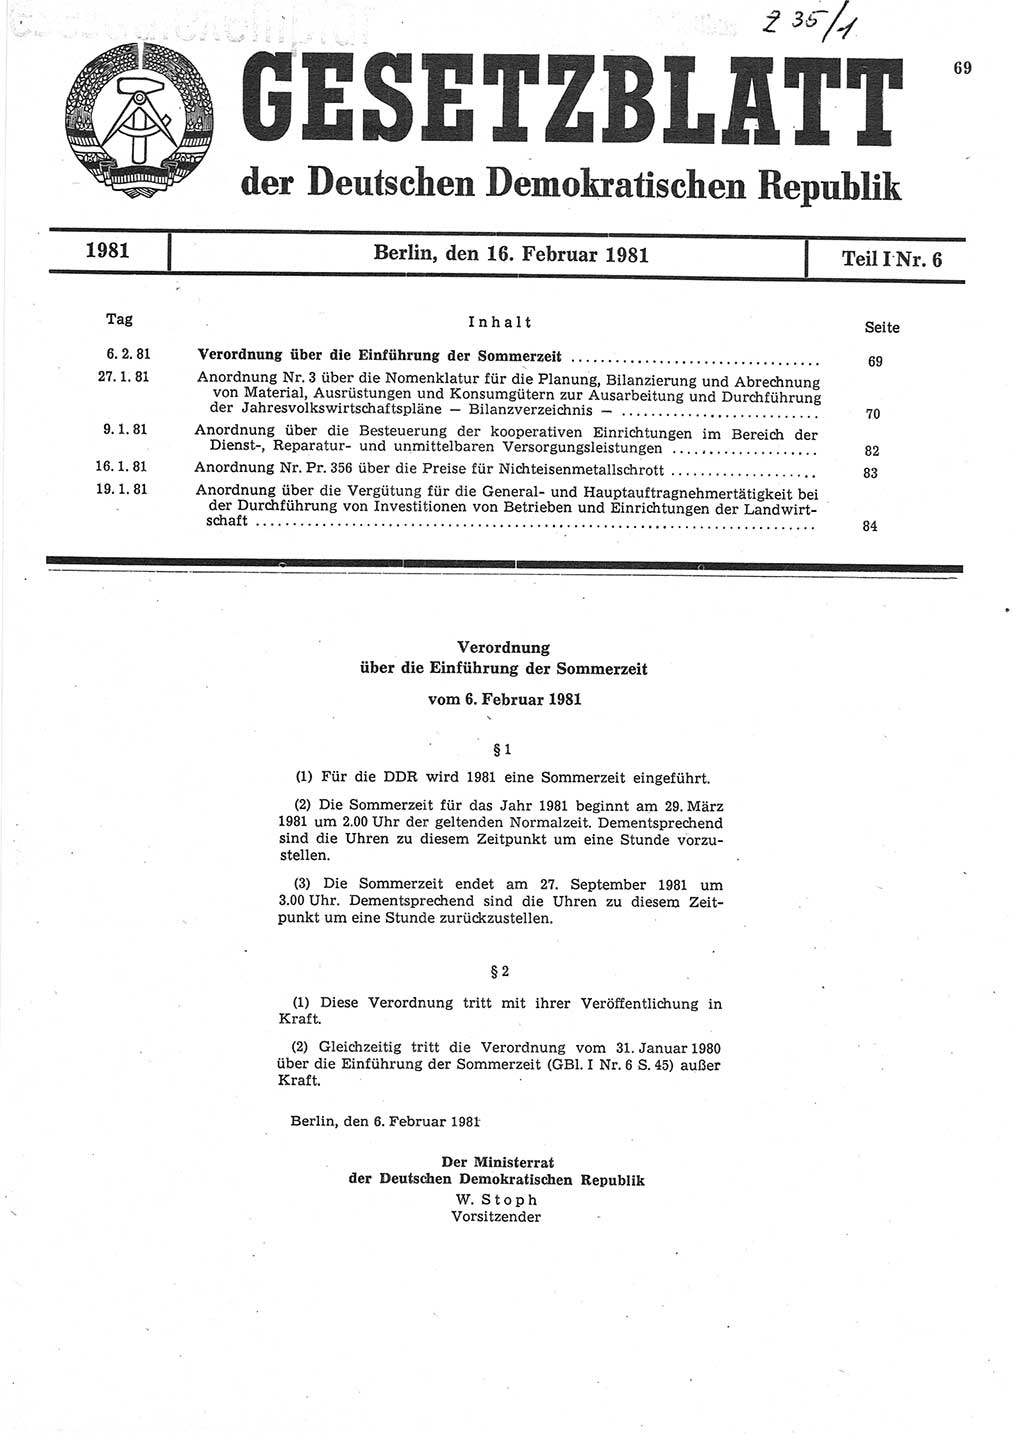 Gesetzblatt (GBl.) der Deutschen Demokratischen Republik (DDR) Teil Ⅰ 1981, Seite 69 (GBl. DDR Ⅰ 1981, S. 69)